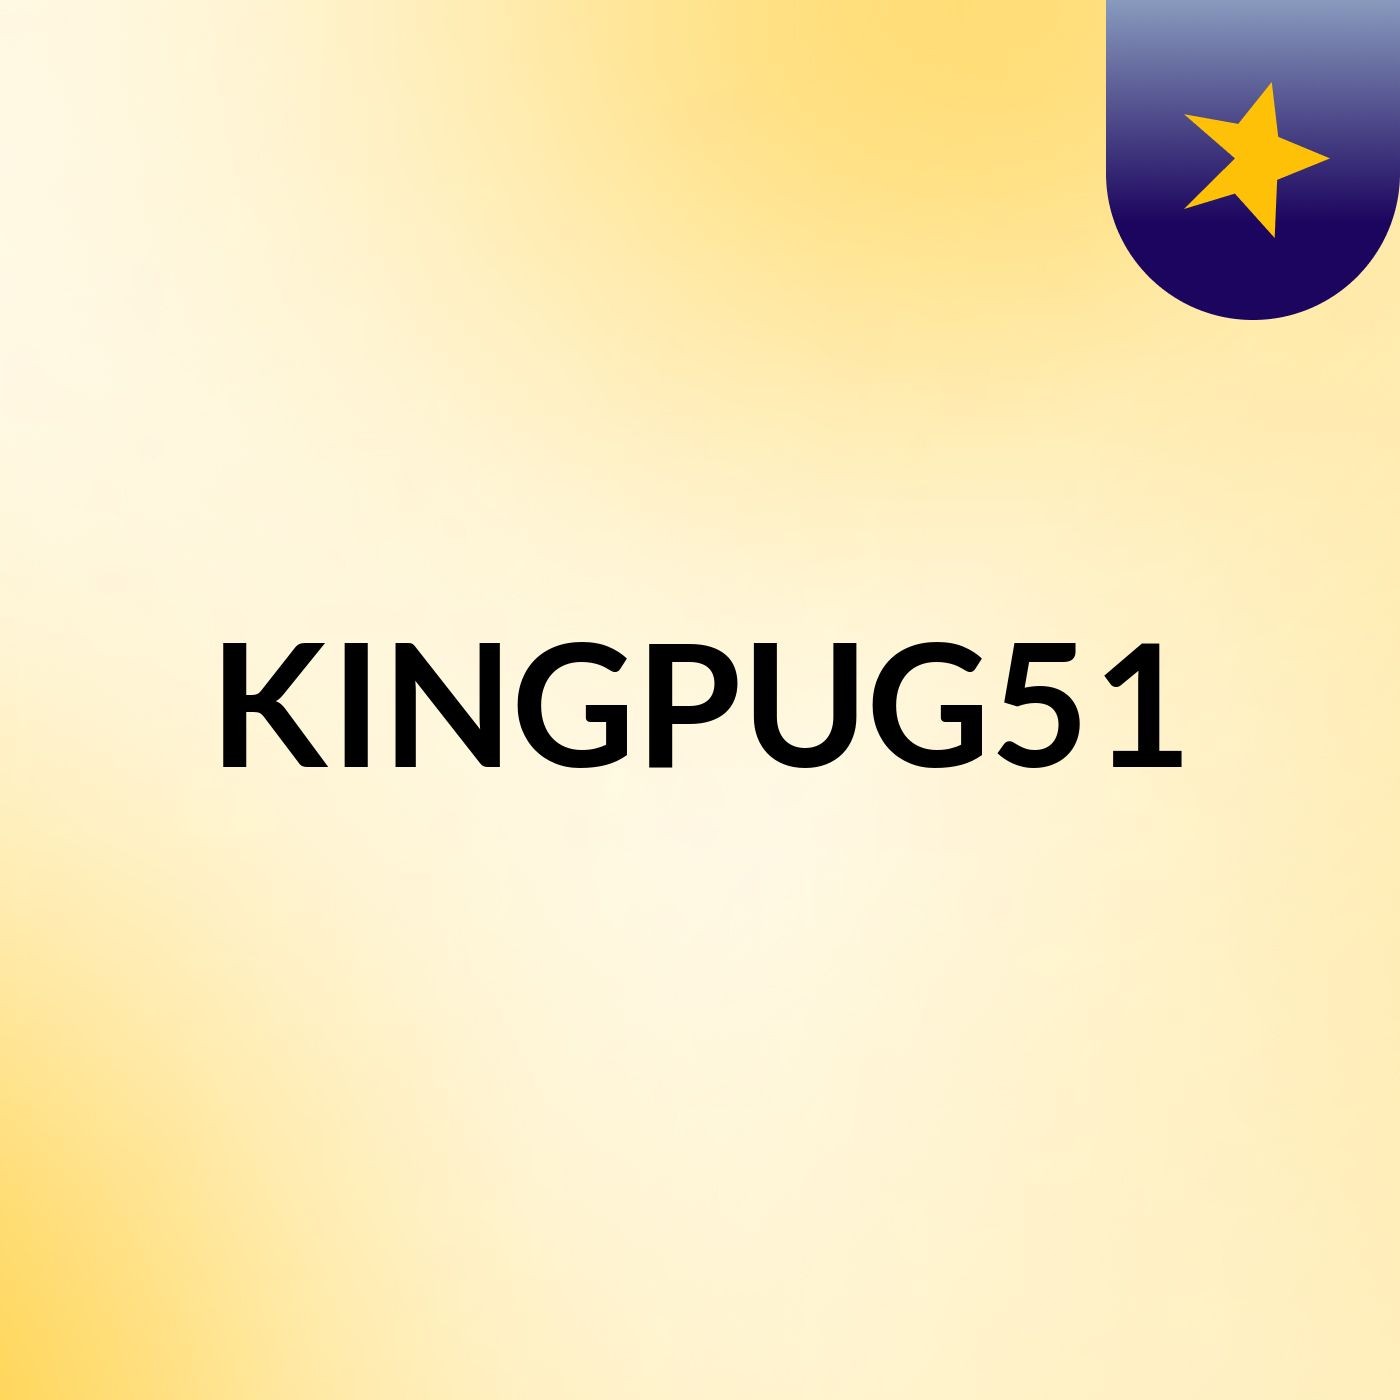 KINGPUG51